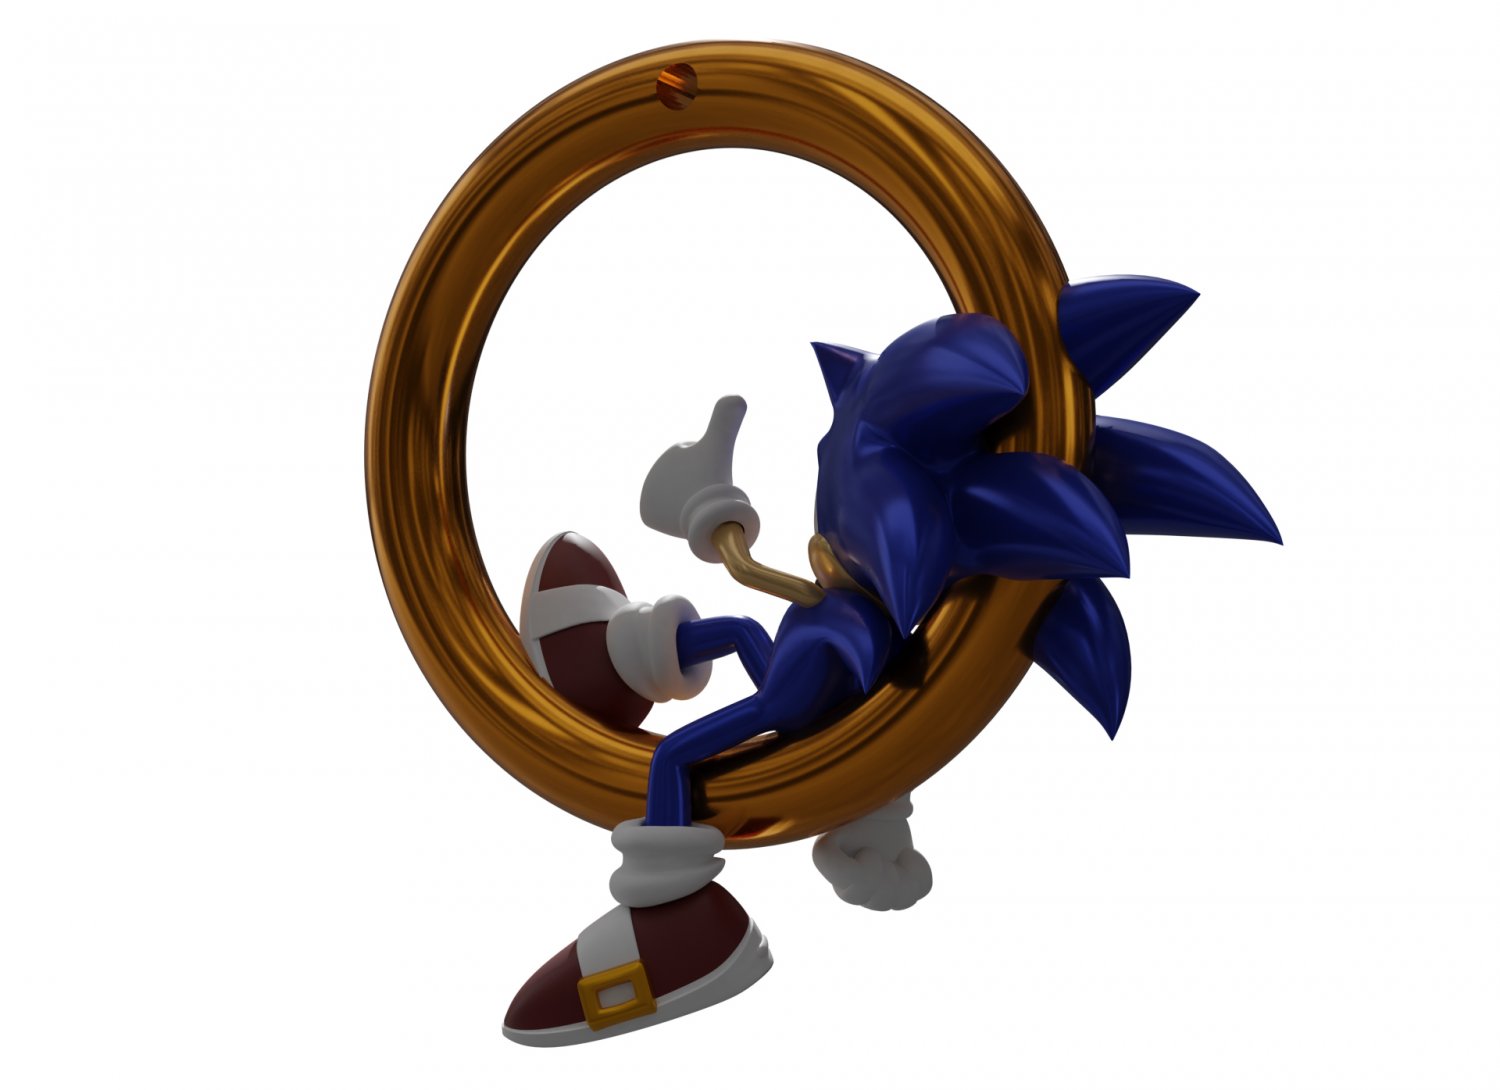 28.422 imagens, fotos stock, objetos 3D e vetores de Sonic